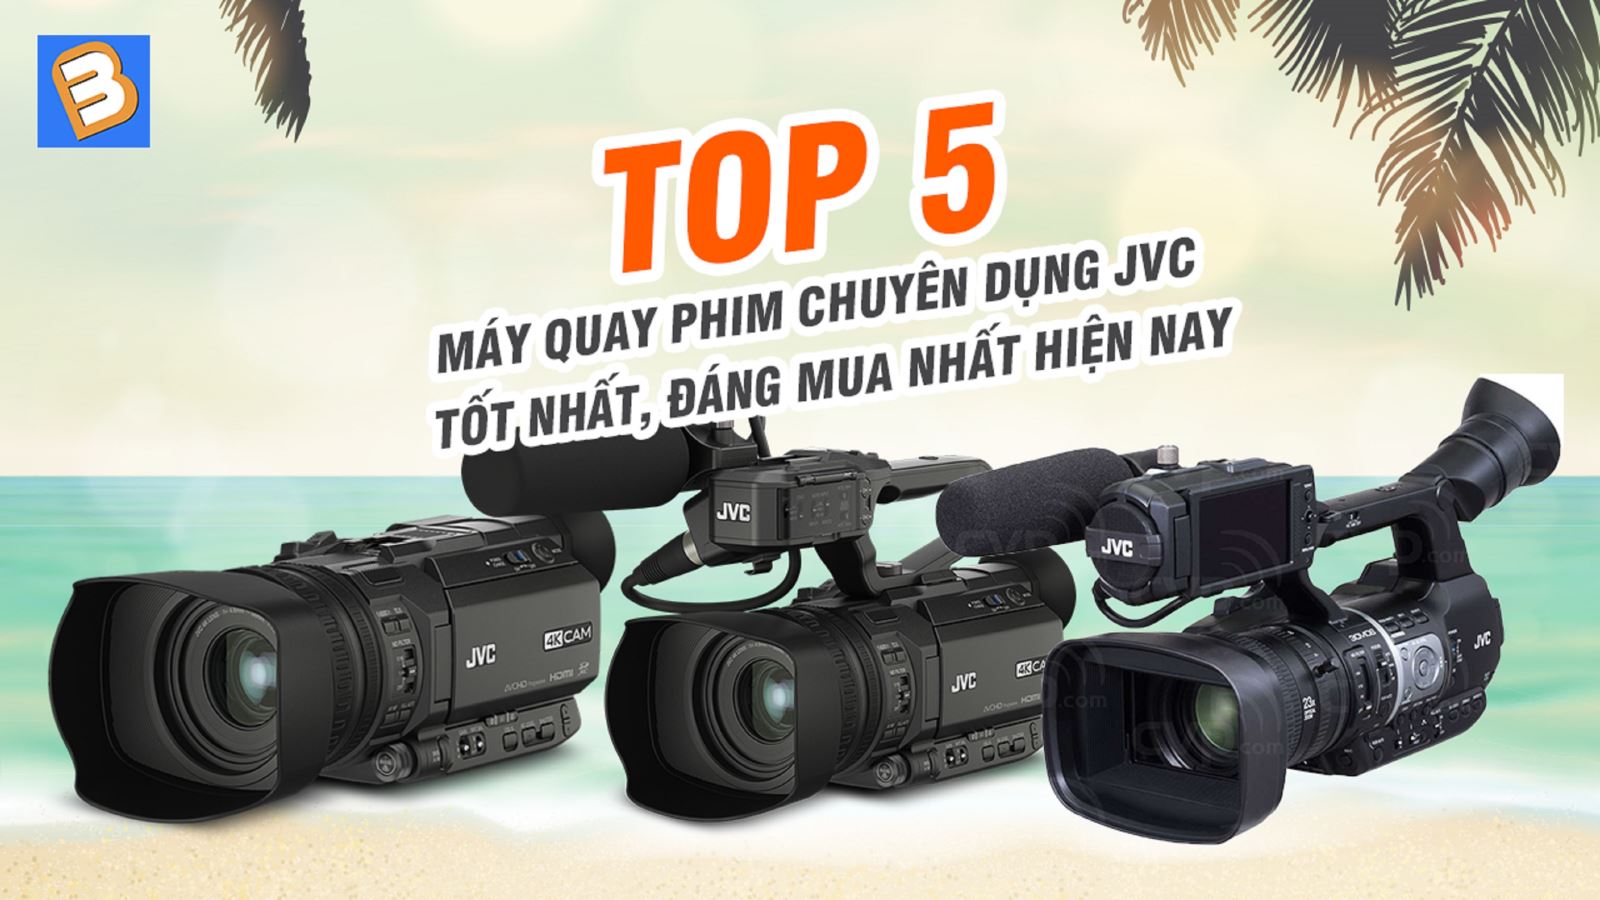 5 máy quay phim chuyên dụng JVC tốt nhất, đáng mua nhất hiện nay